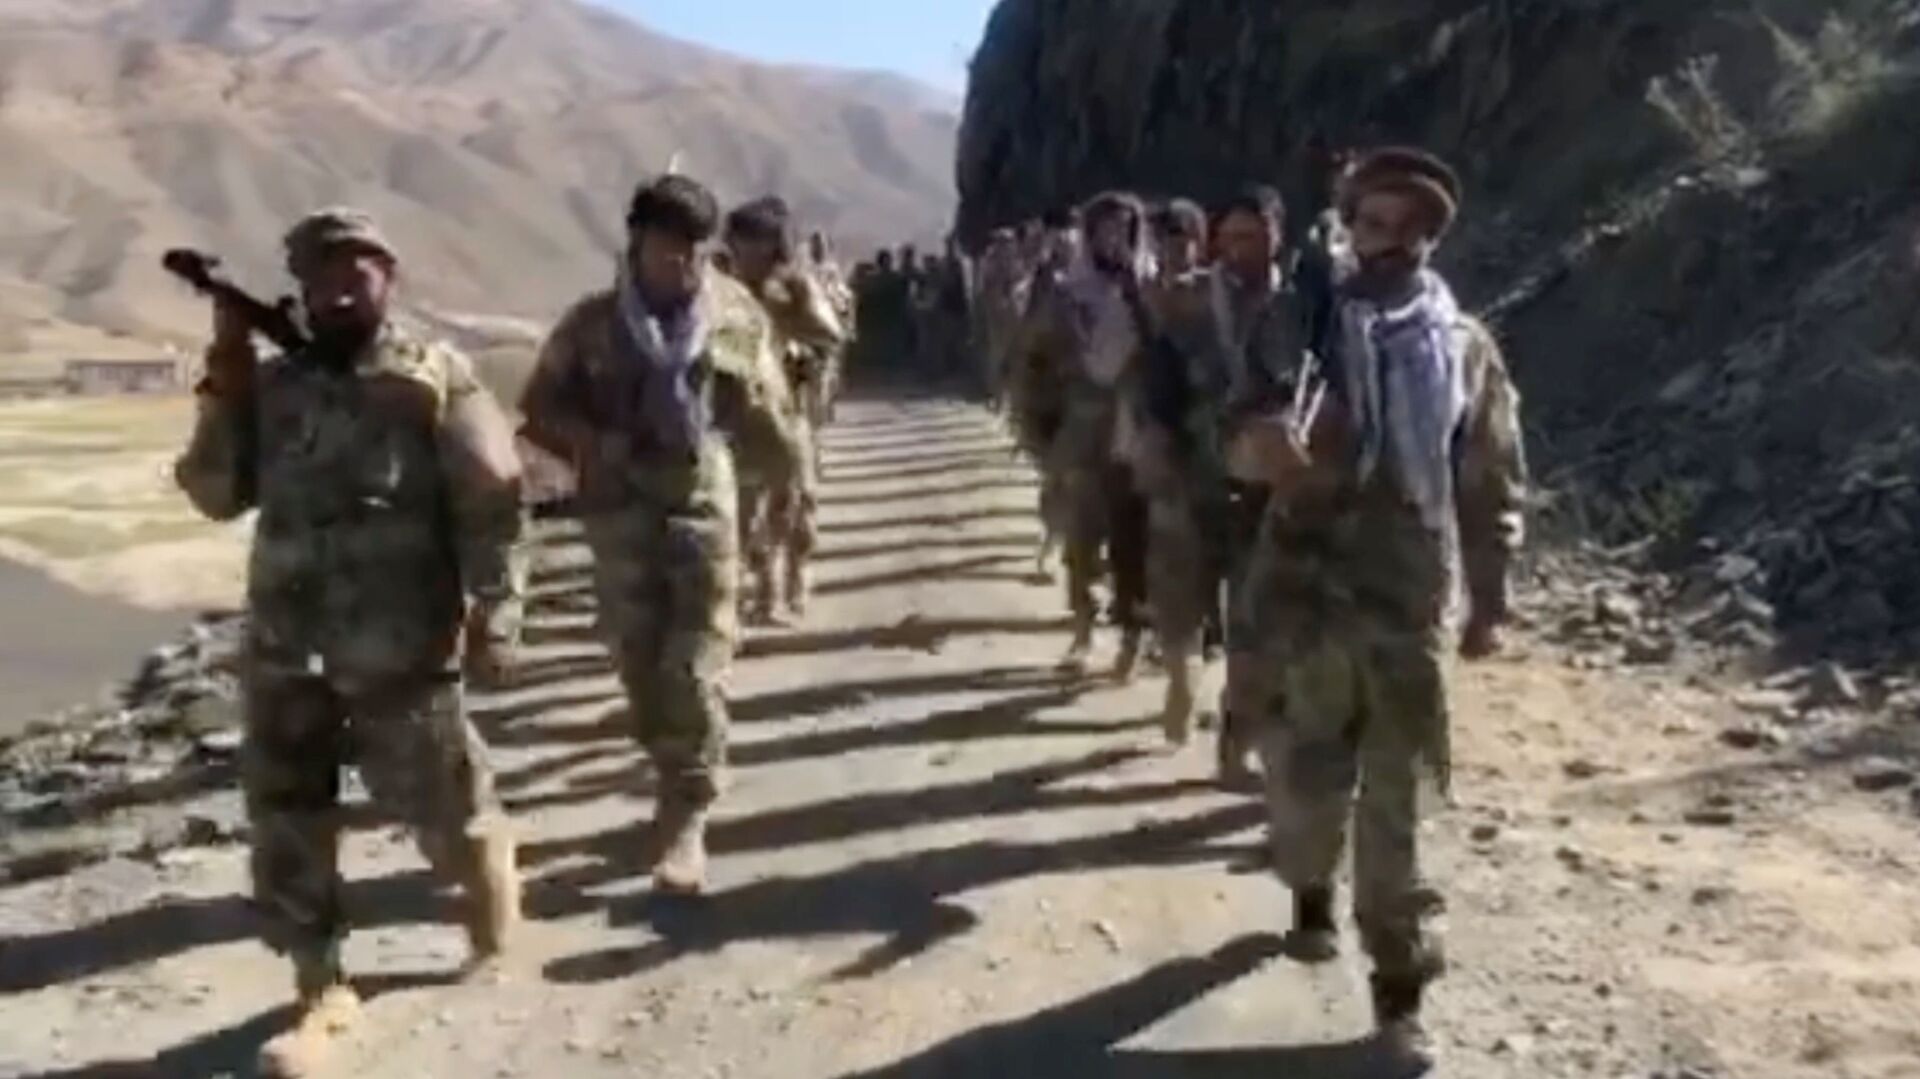 Anti-Taliban resistance troops walk in Panjshir Valley, Afghanistan August 25, 2021 in this still image taken from video - Sputnik International, 1920, 06.09.2021